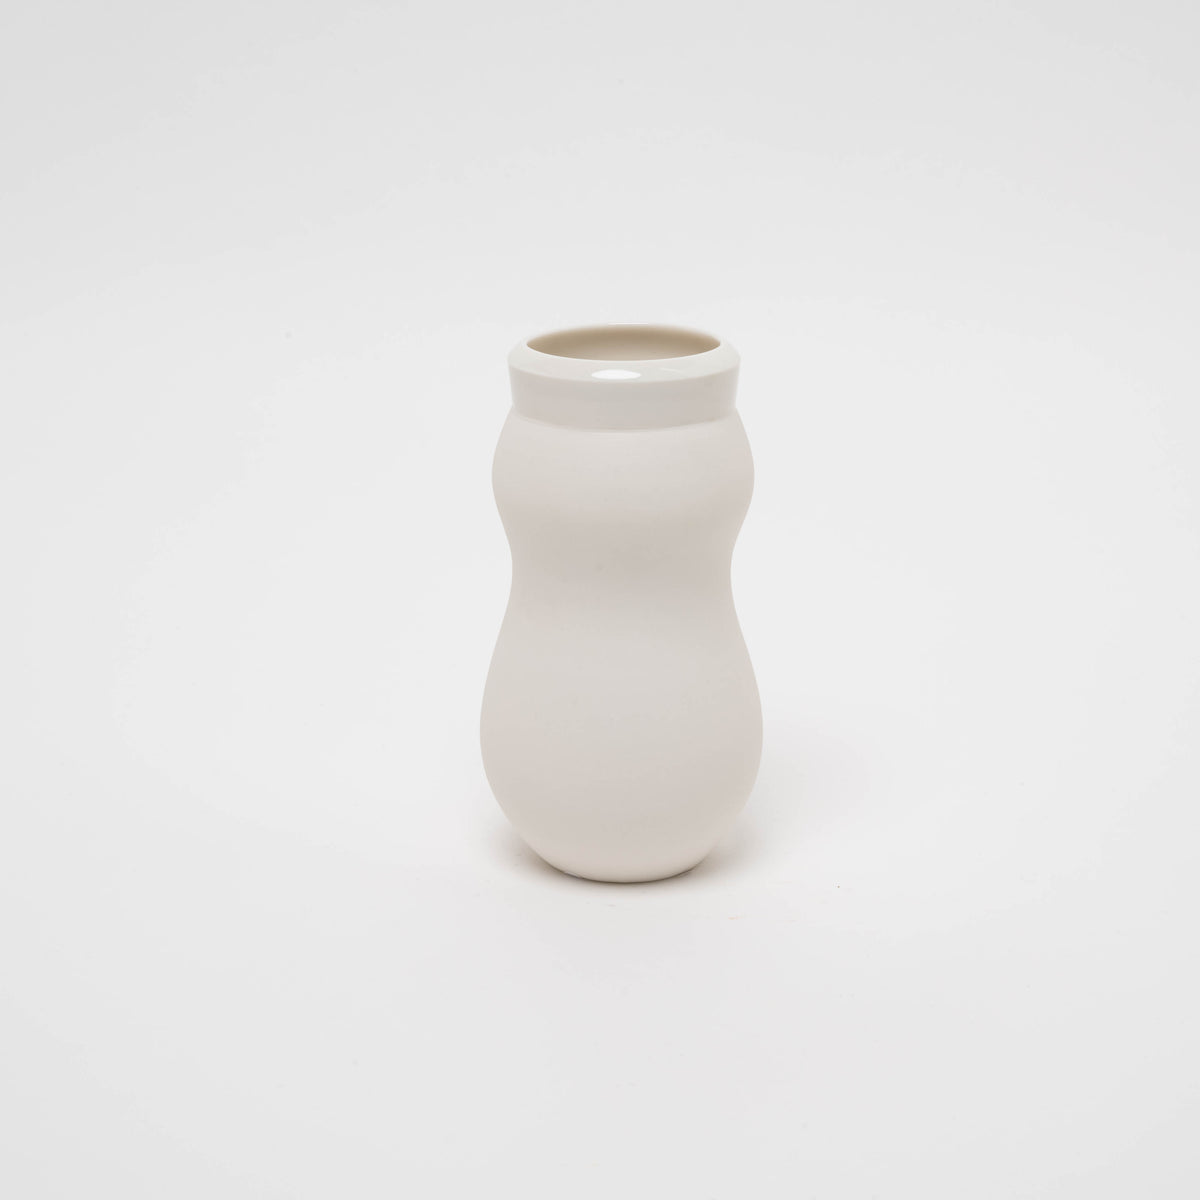 Porcelain vase No. 20